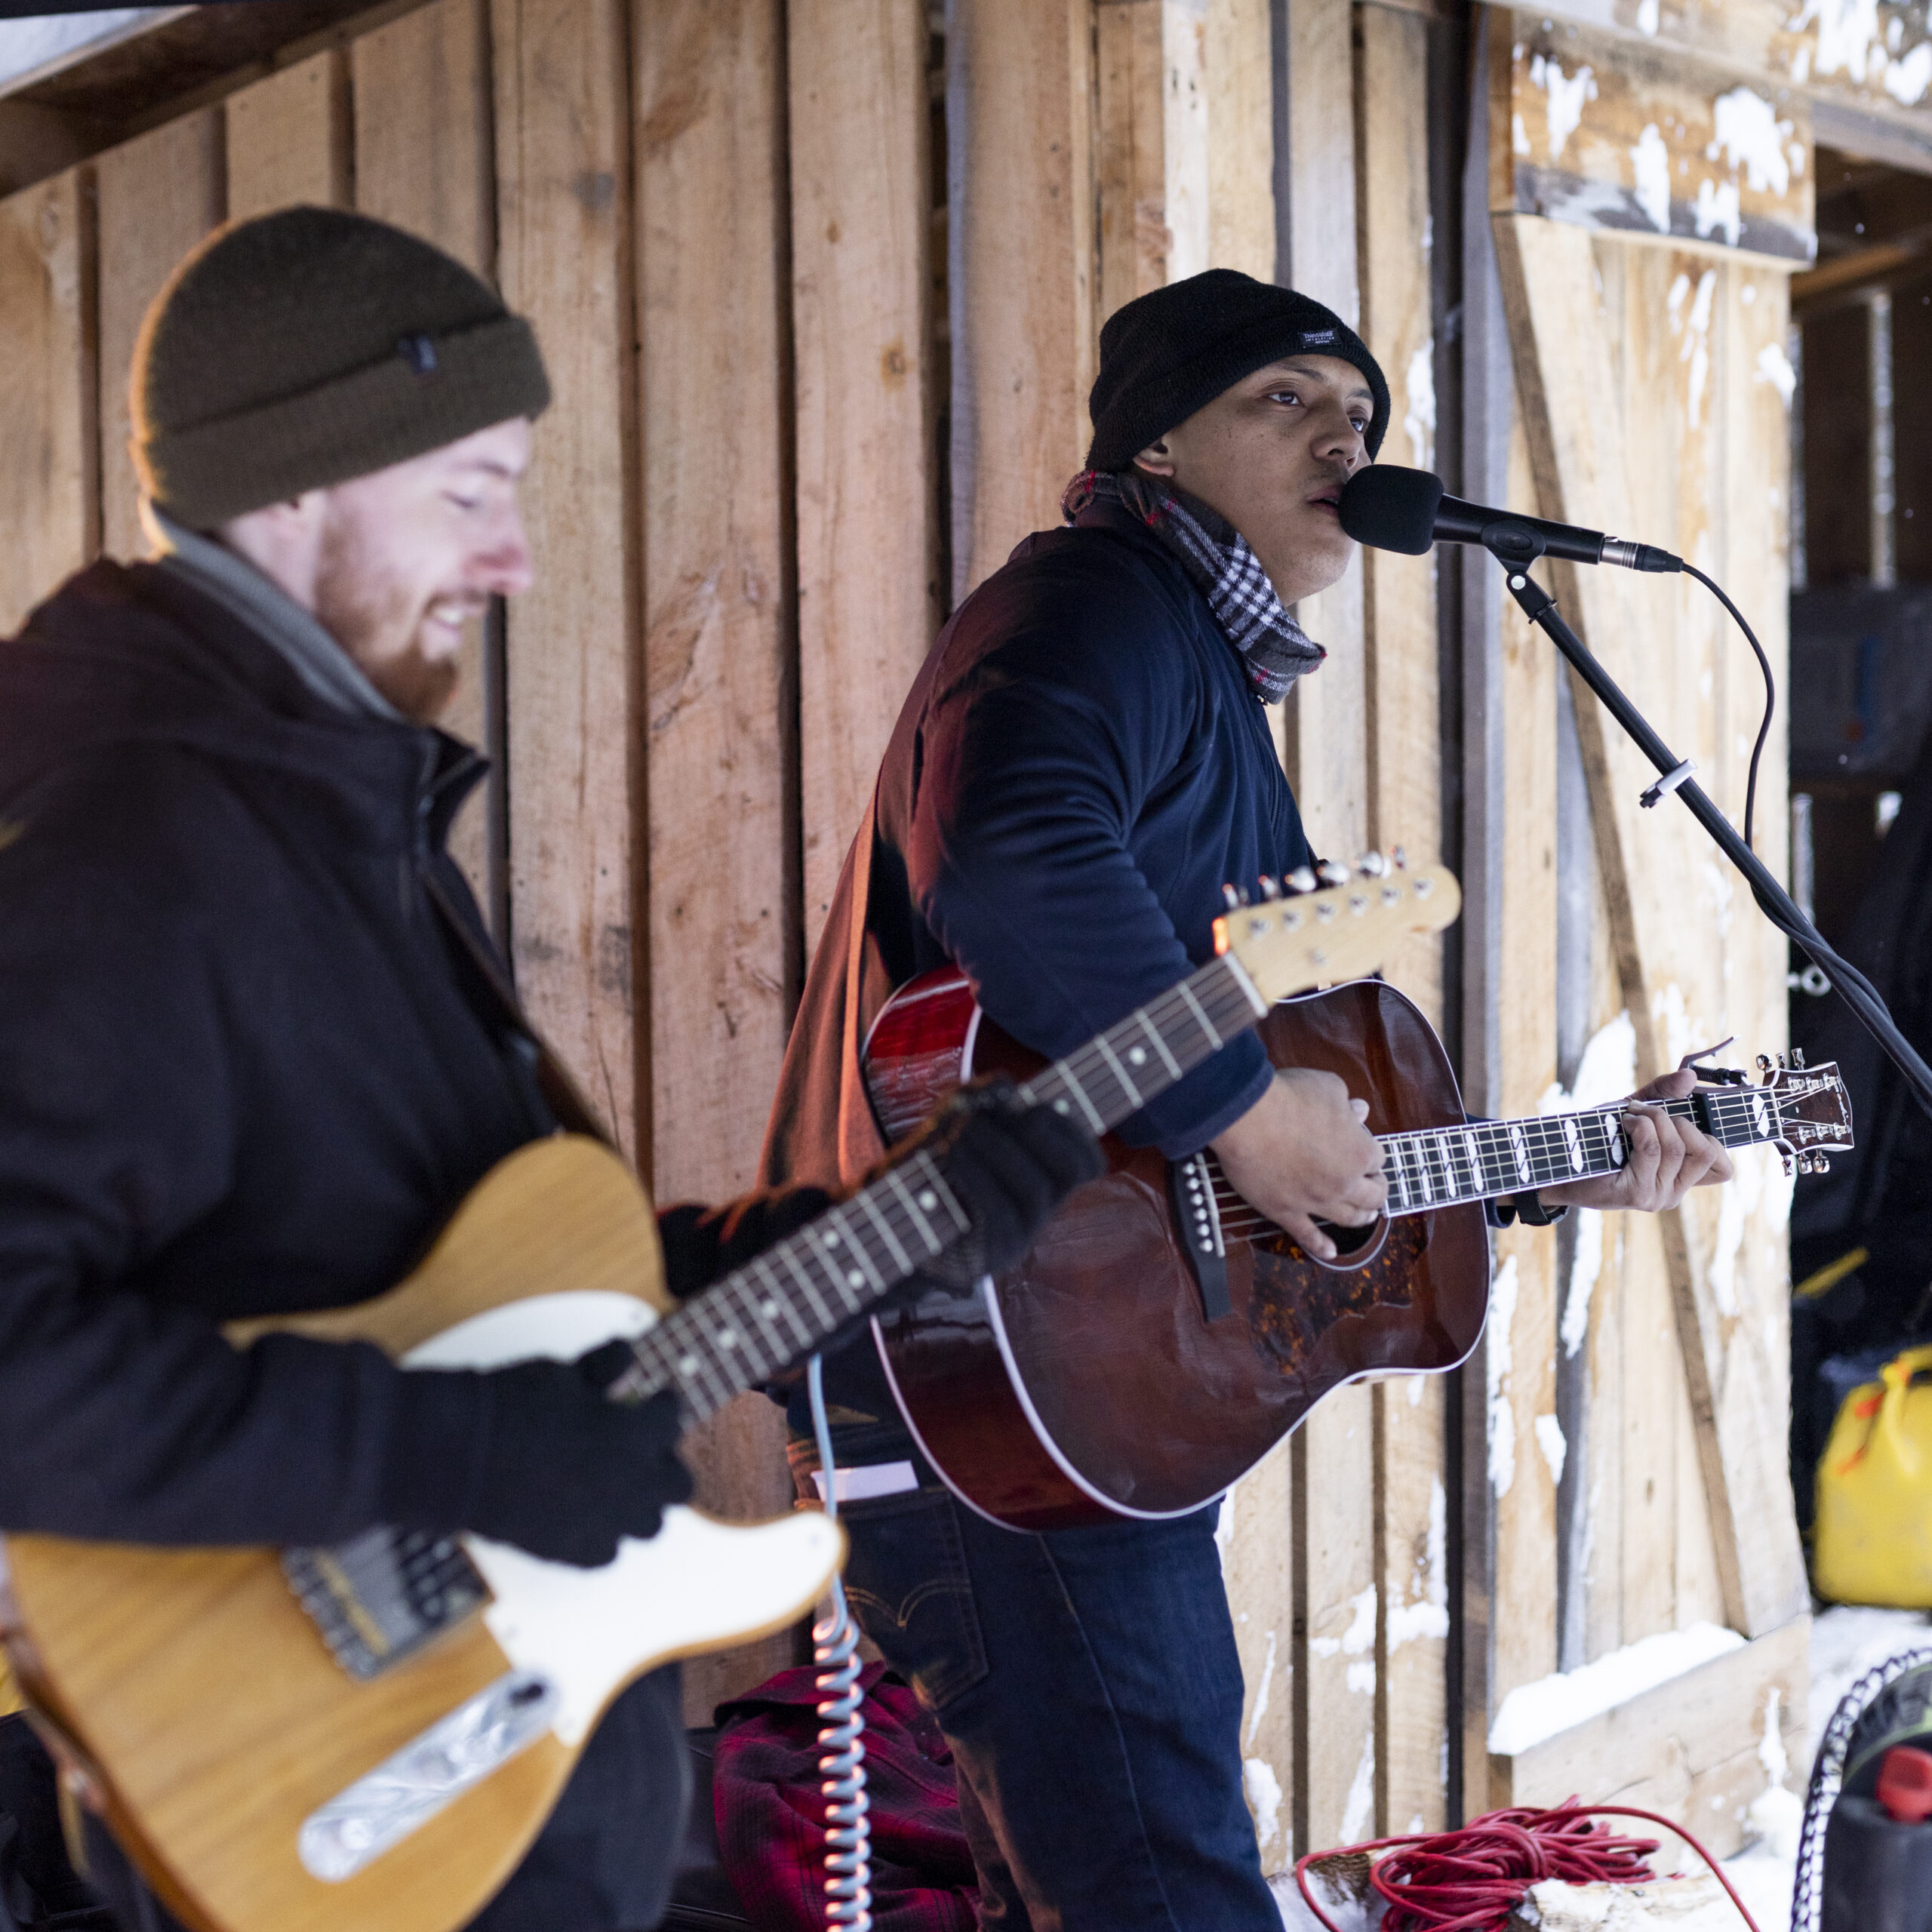 Musiciens chantant à l'extérieur en hiver, une activité de groupe de notre club privé.